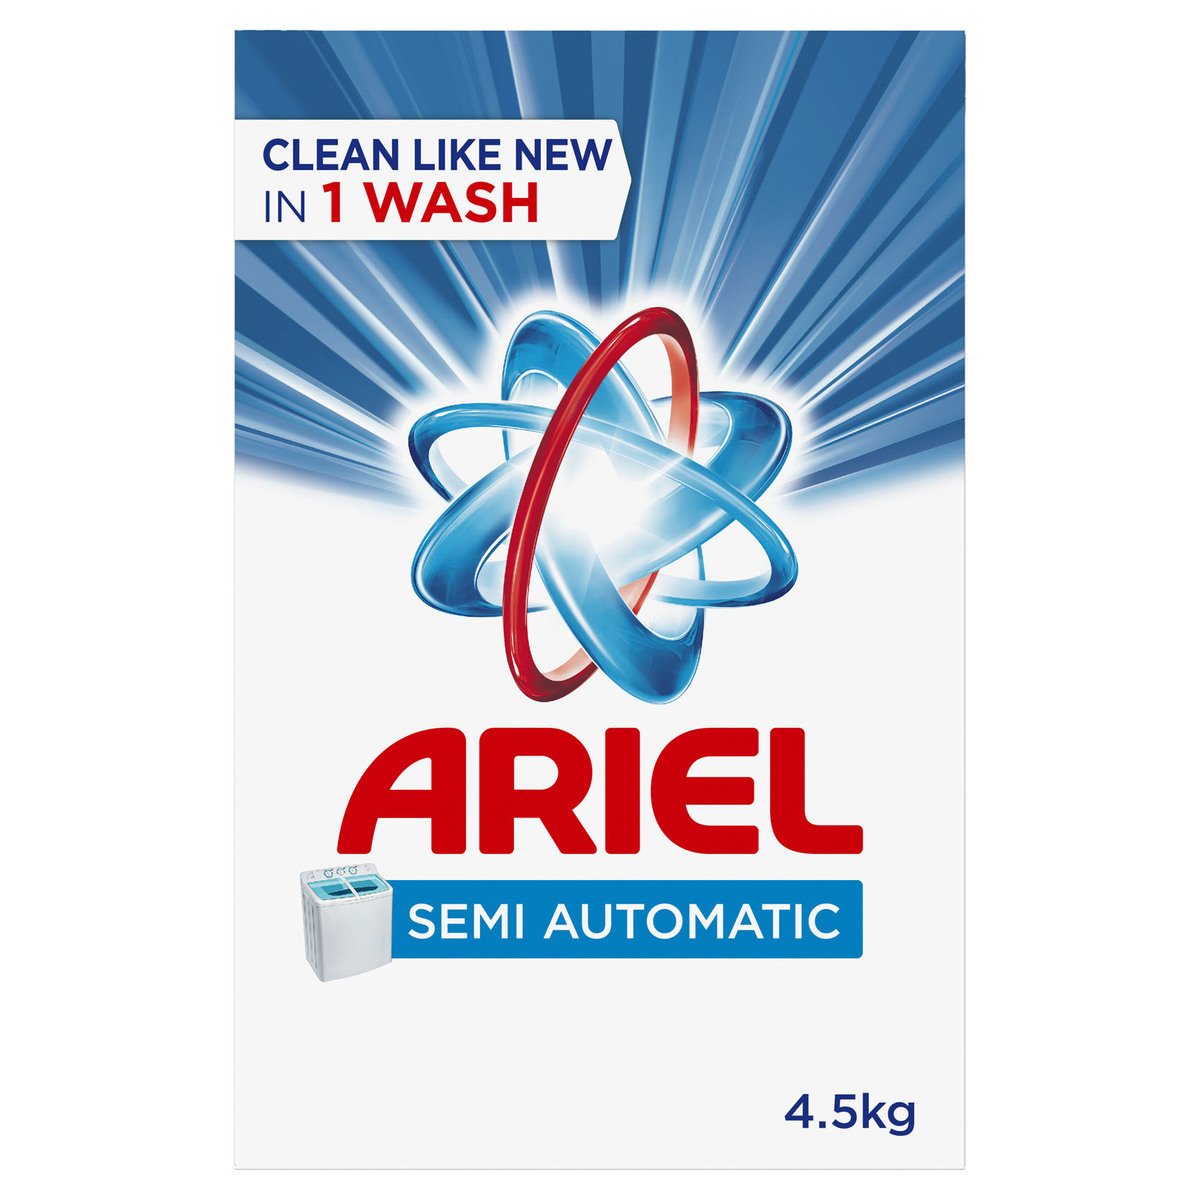 Ariel Washing Powder Original Scent 4.5kg